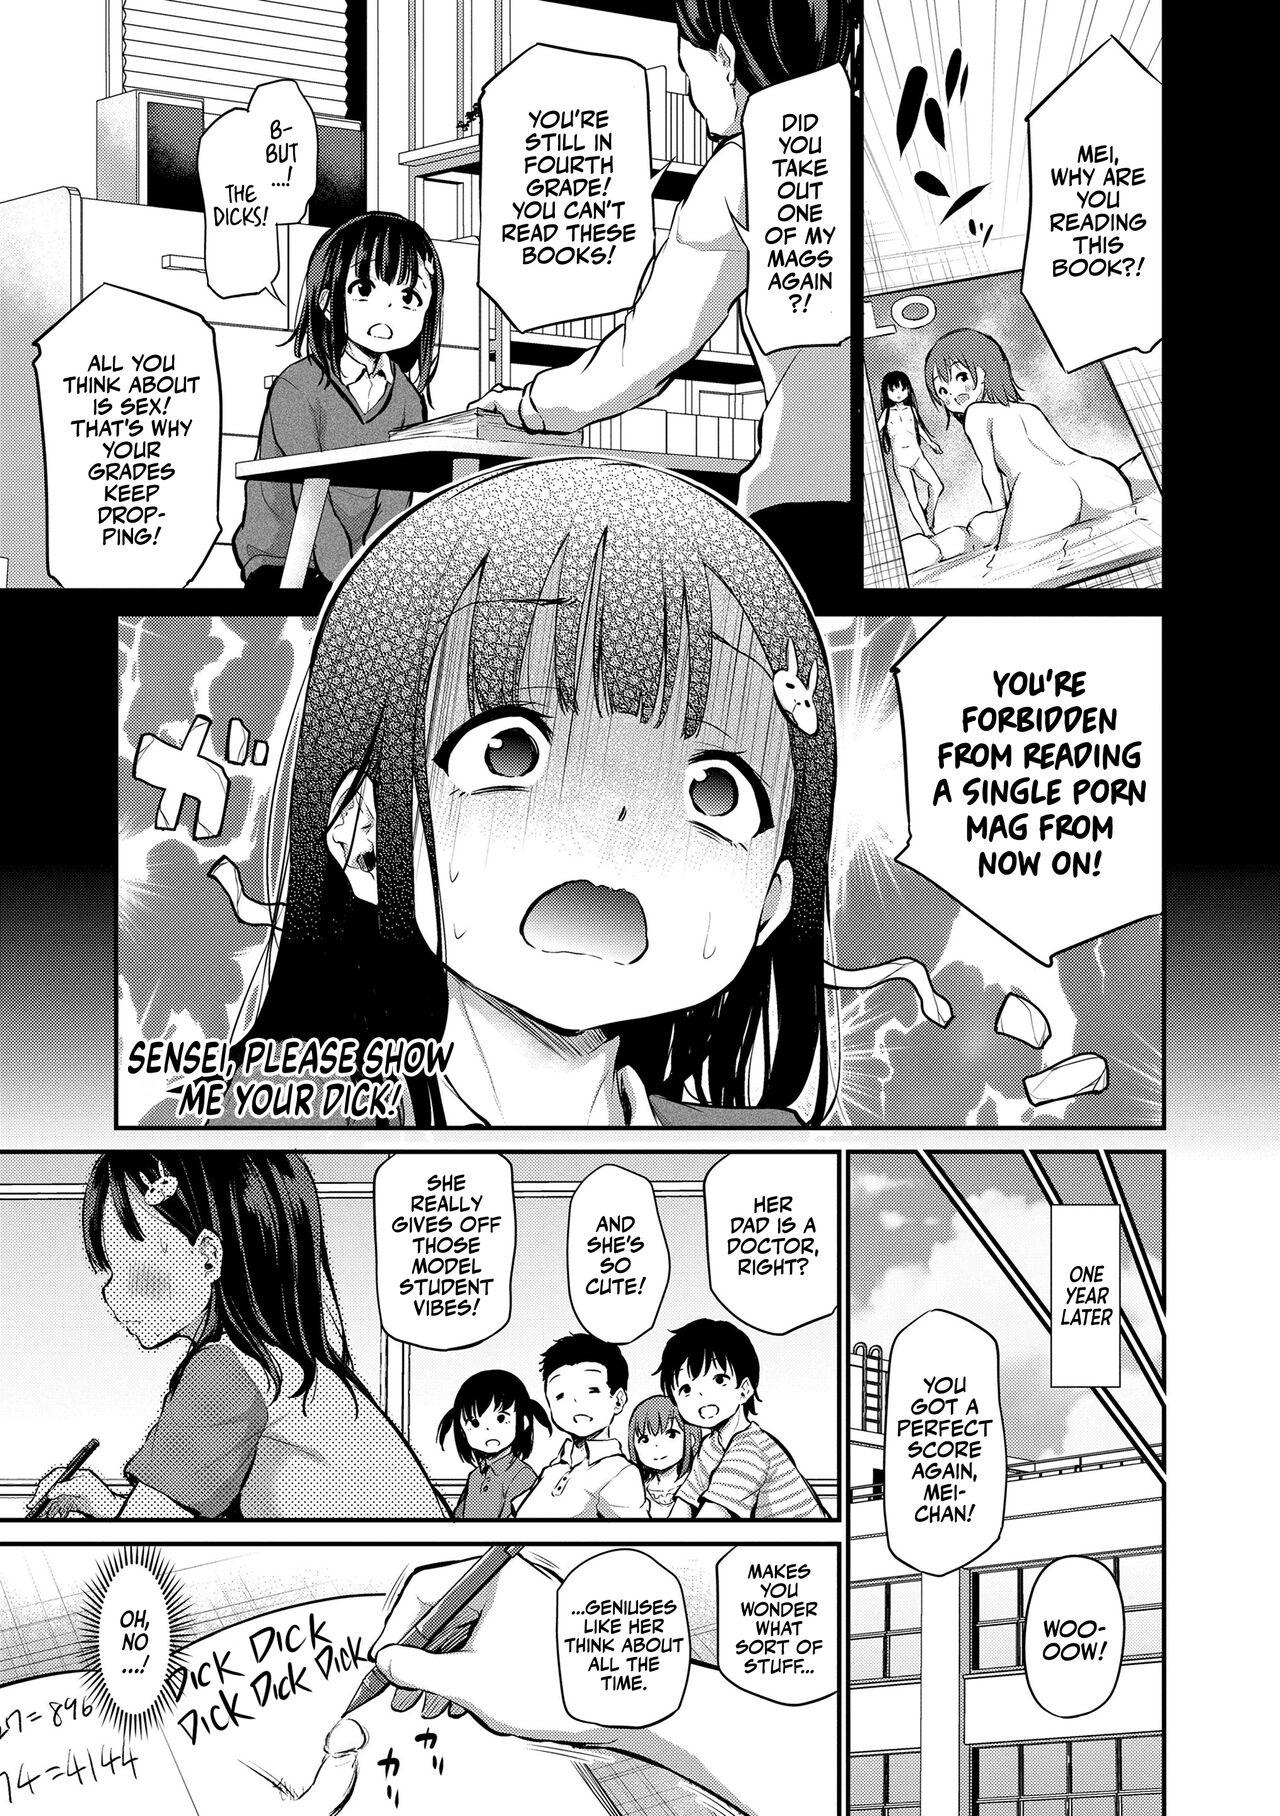 Hotfuck Sensei Ochinchin Misete Kudasai! | Sensei, Please Show Me Your Dick! Sexo - Page 1